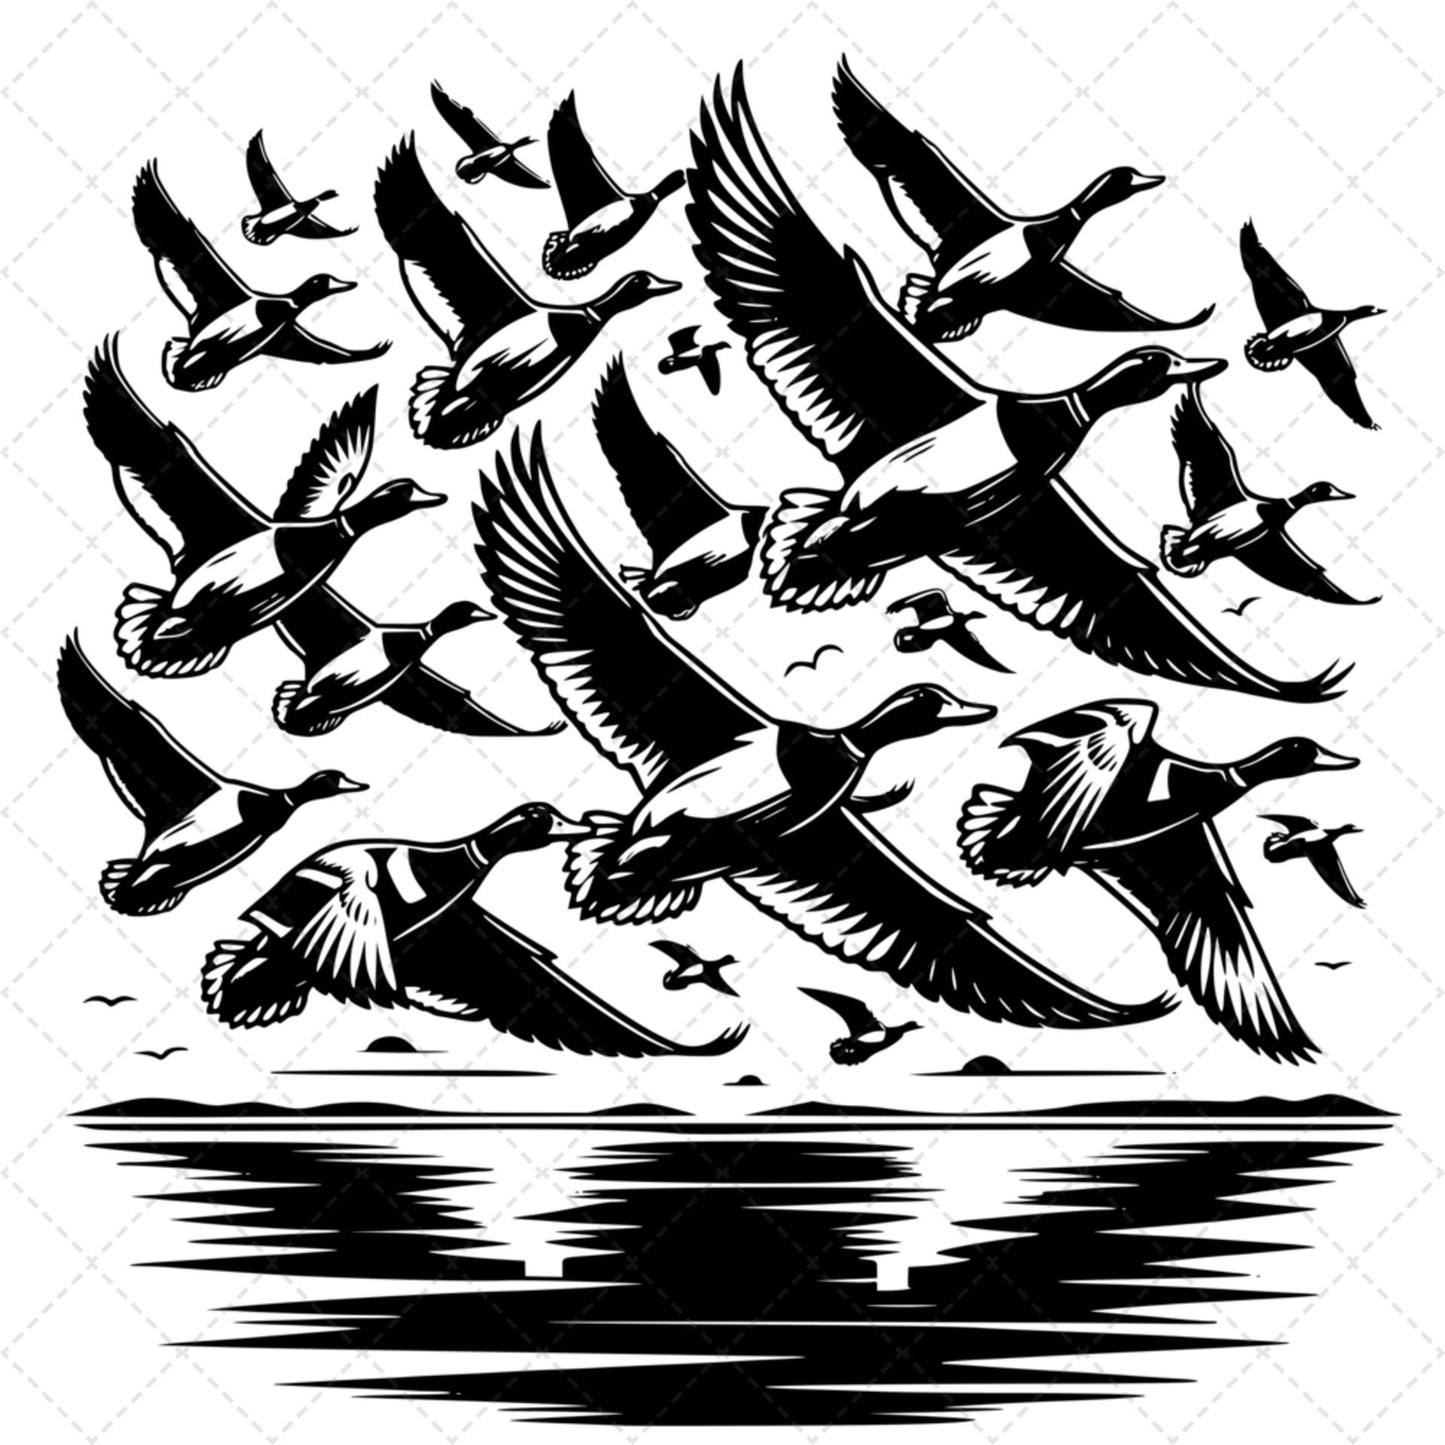 Ducks Flying Over River Black Transfer